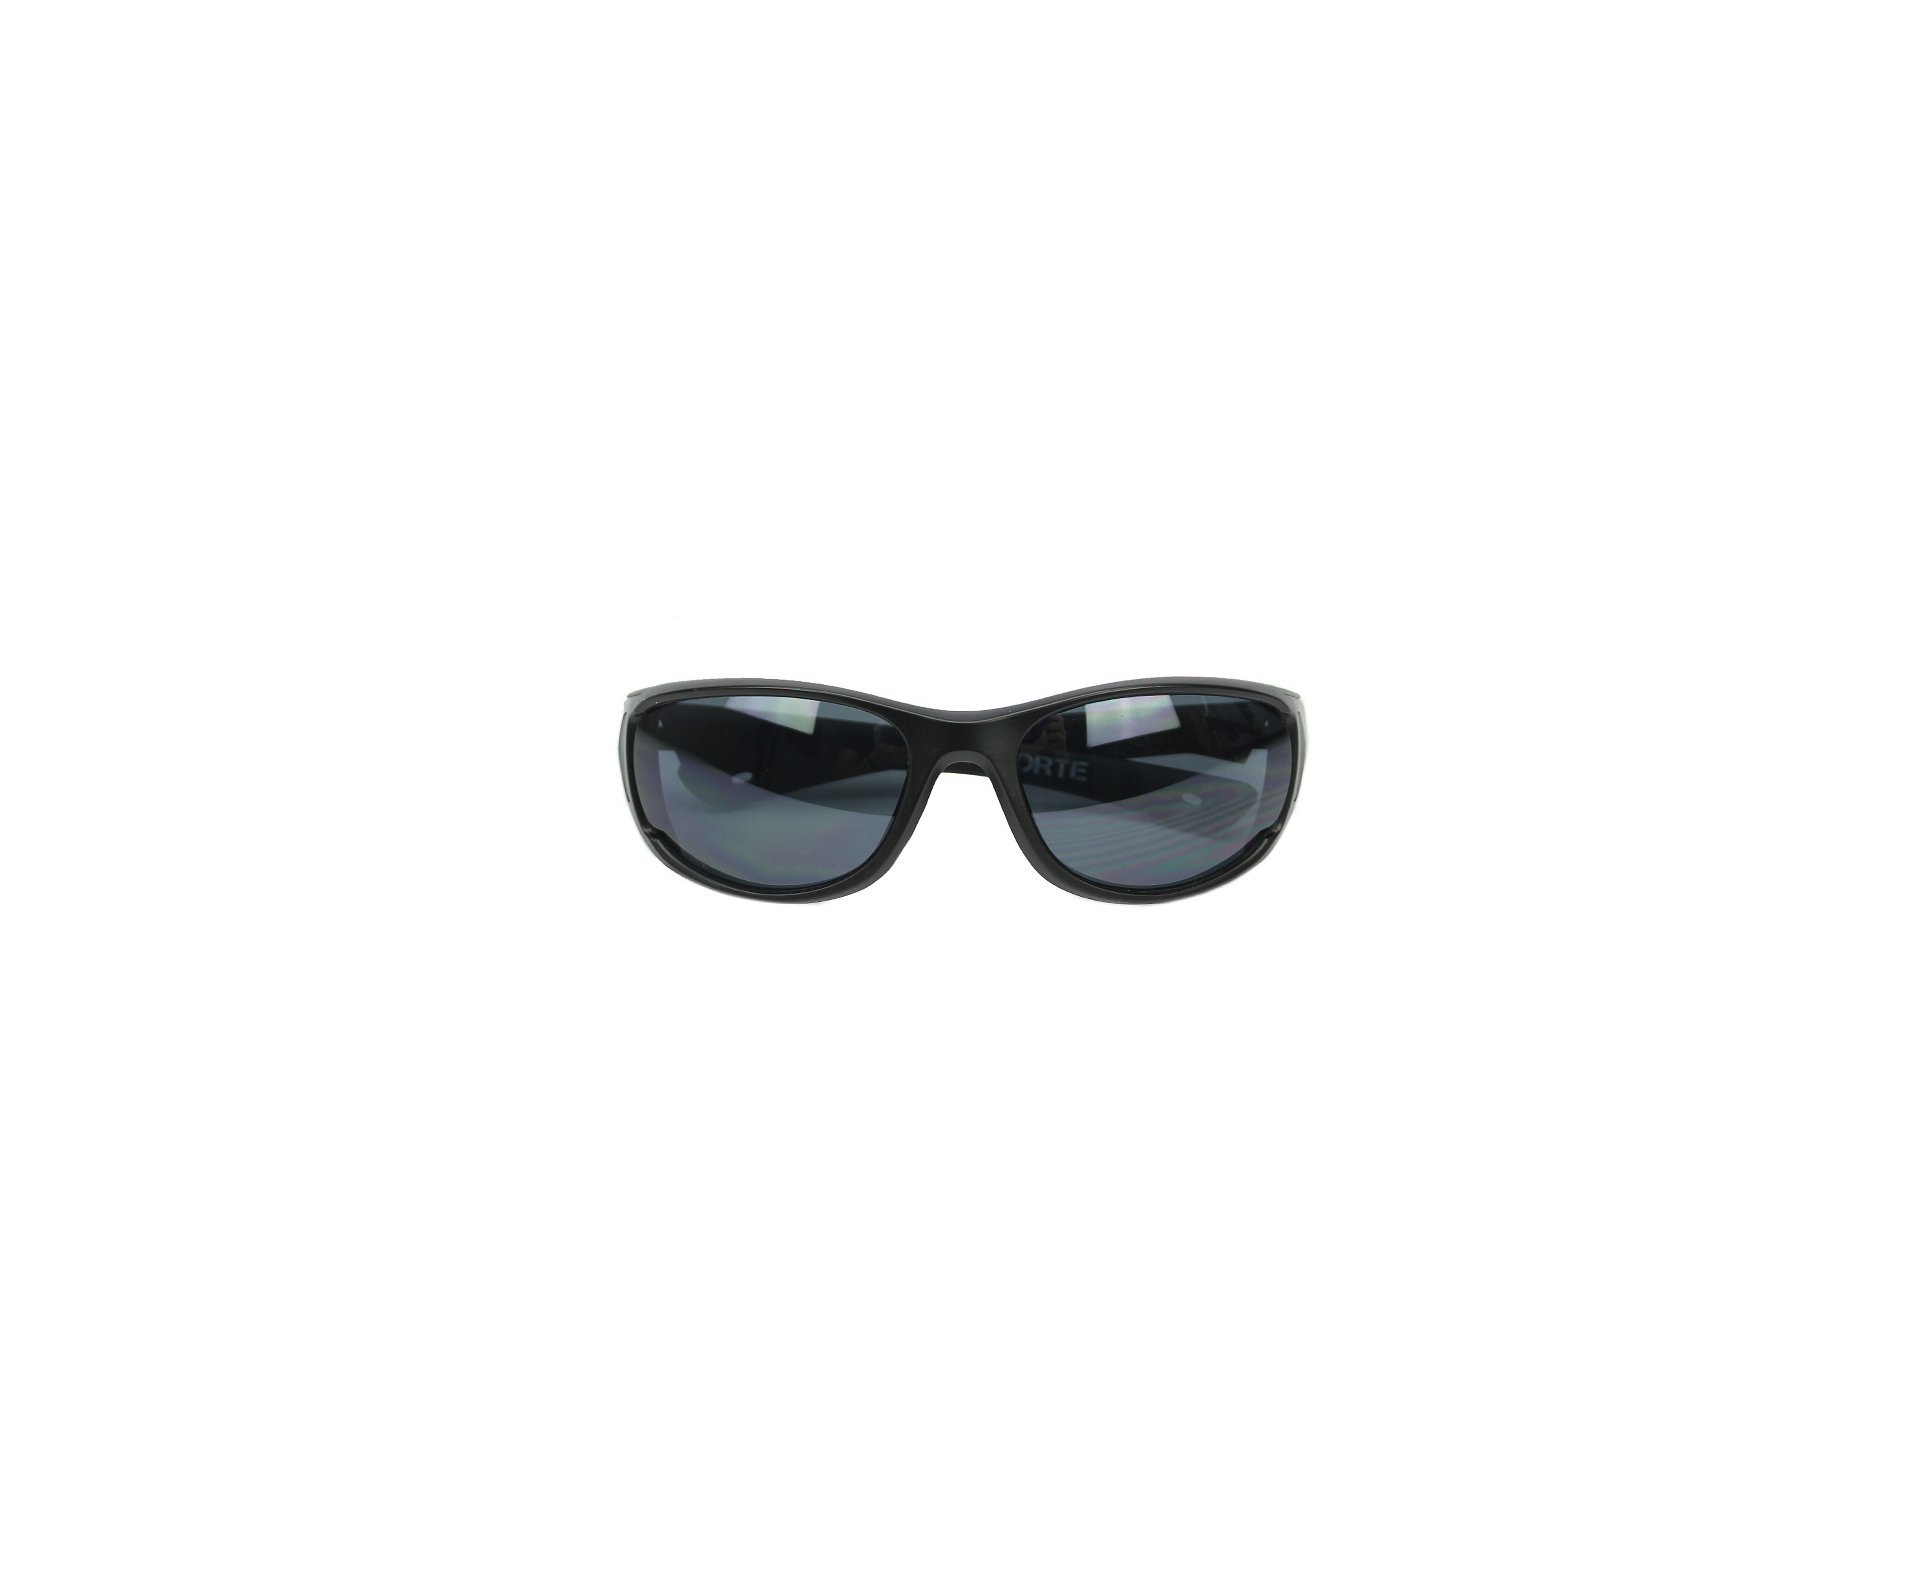 Óculos Balístico com Armação Preto Fosco - Lente Preta 20542 - C123 - Insano Shades